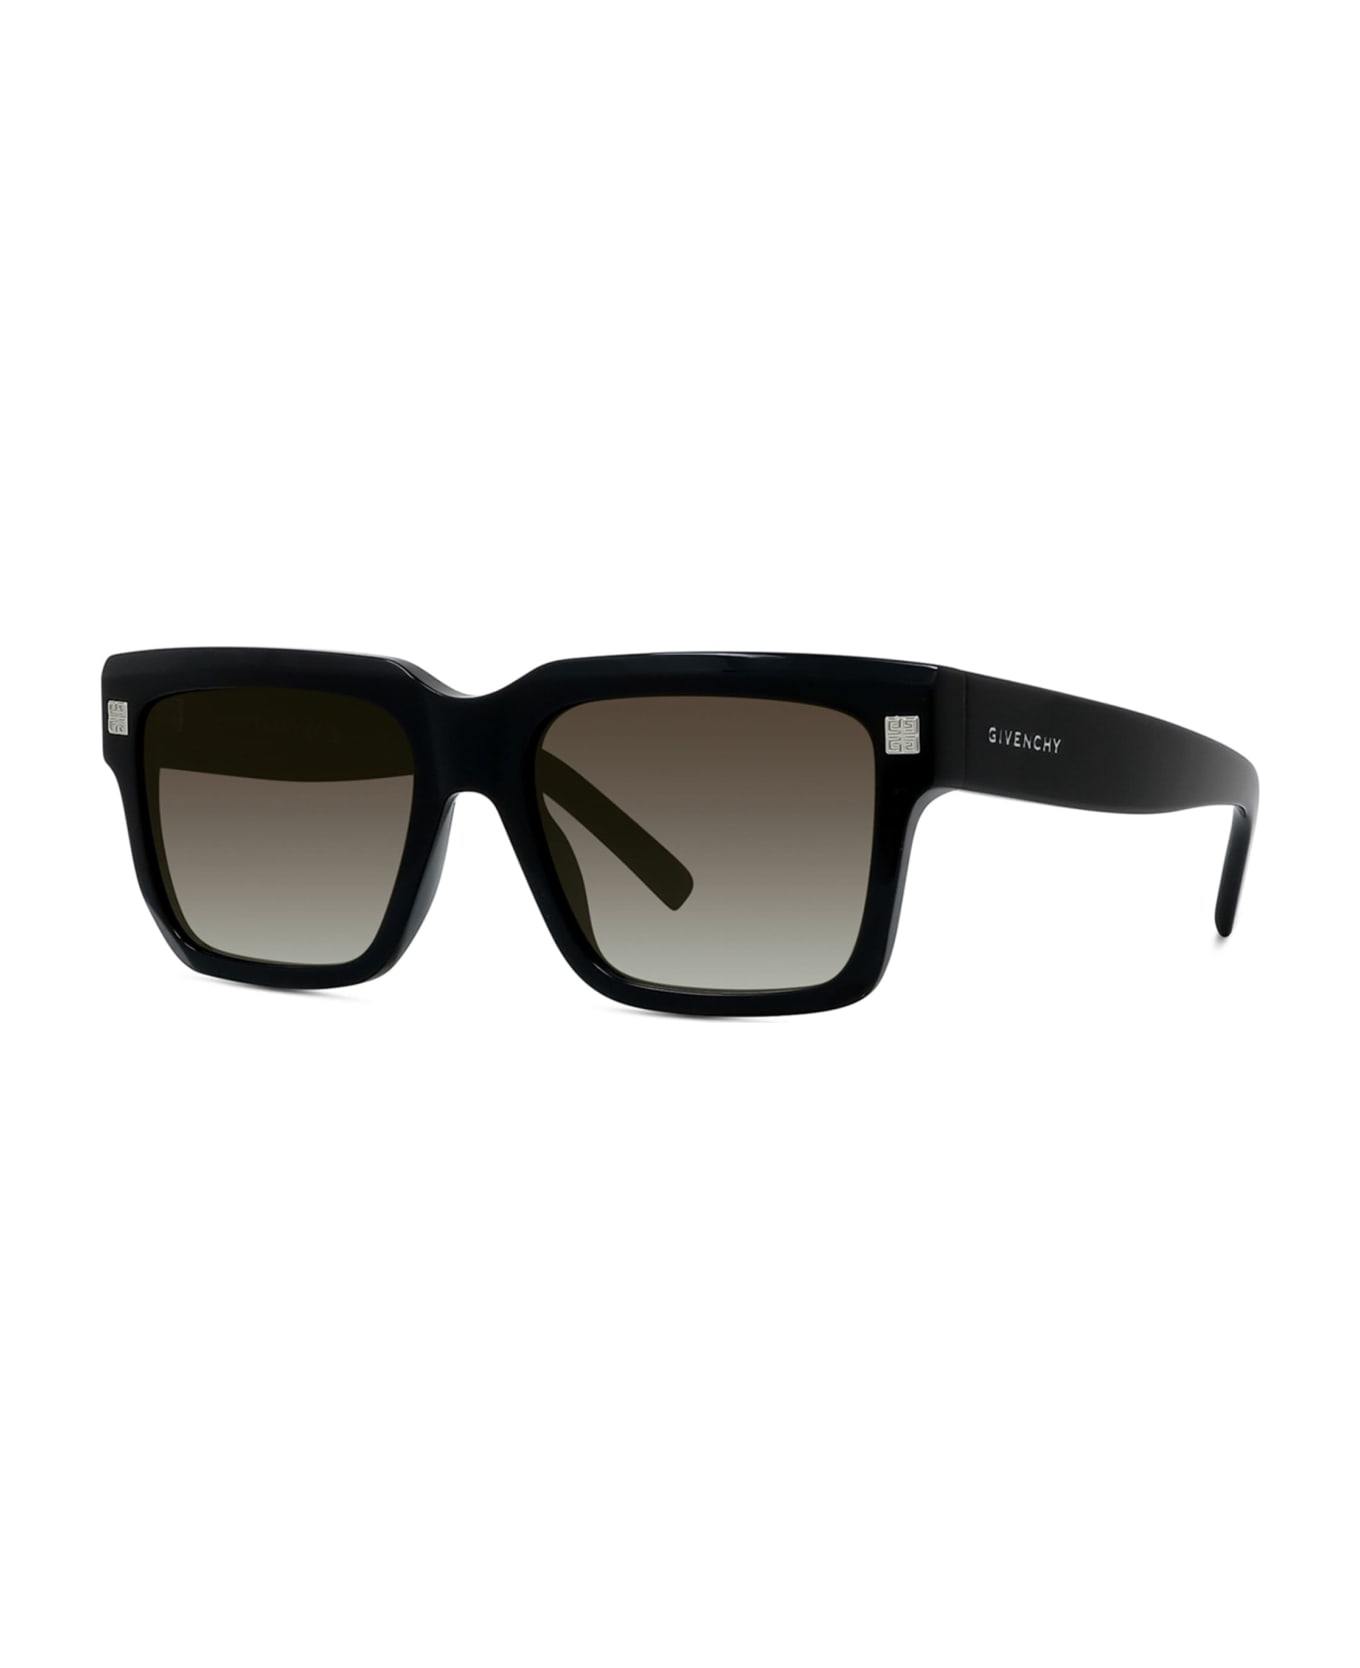 Givenchy Eyewear Gv40060i - Shiny Black Sunglasses - black shine